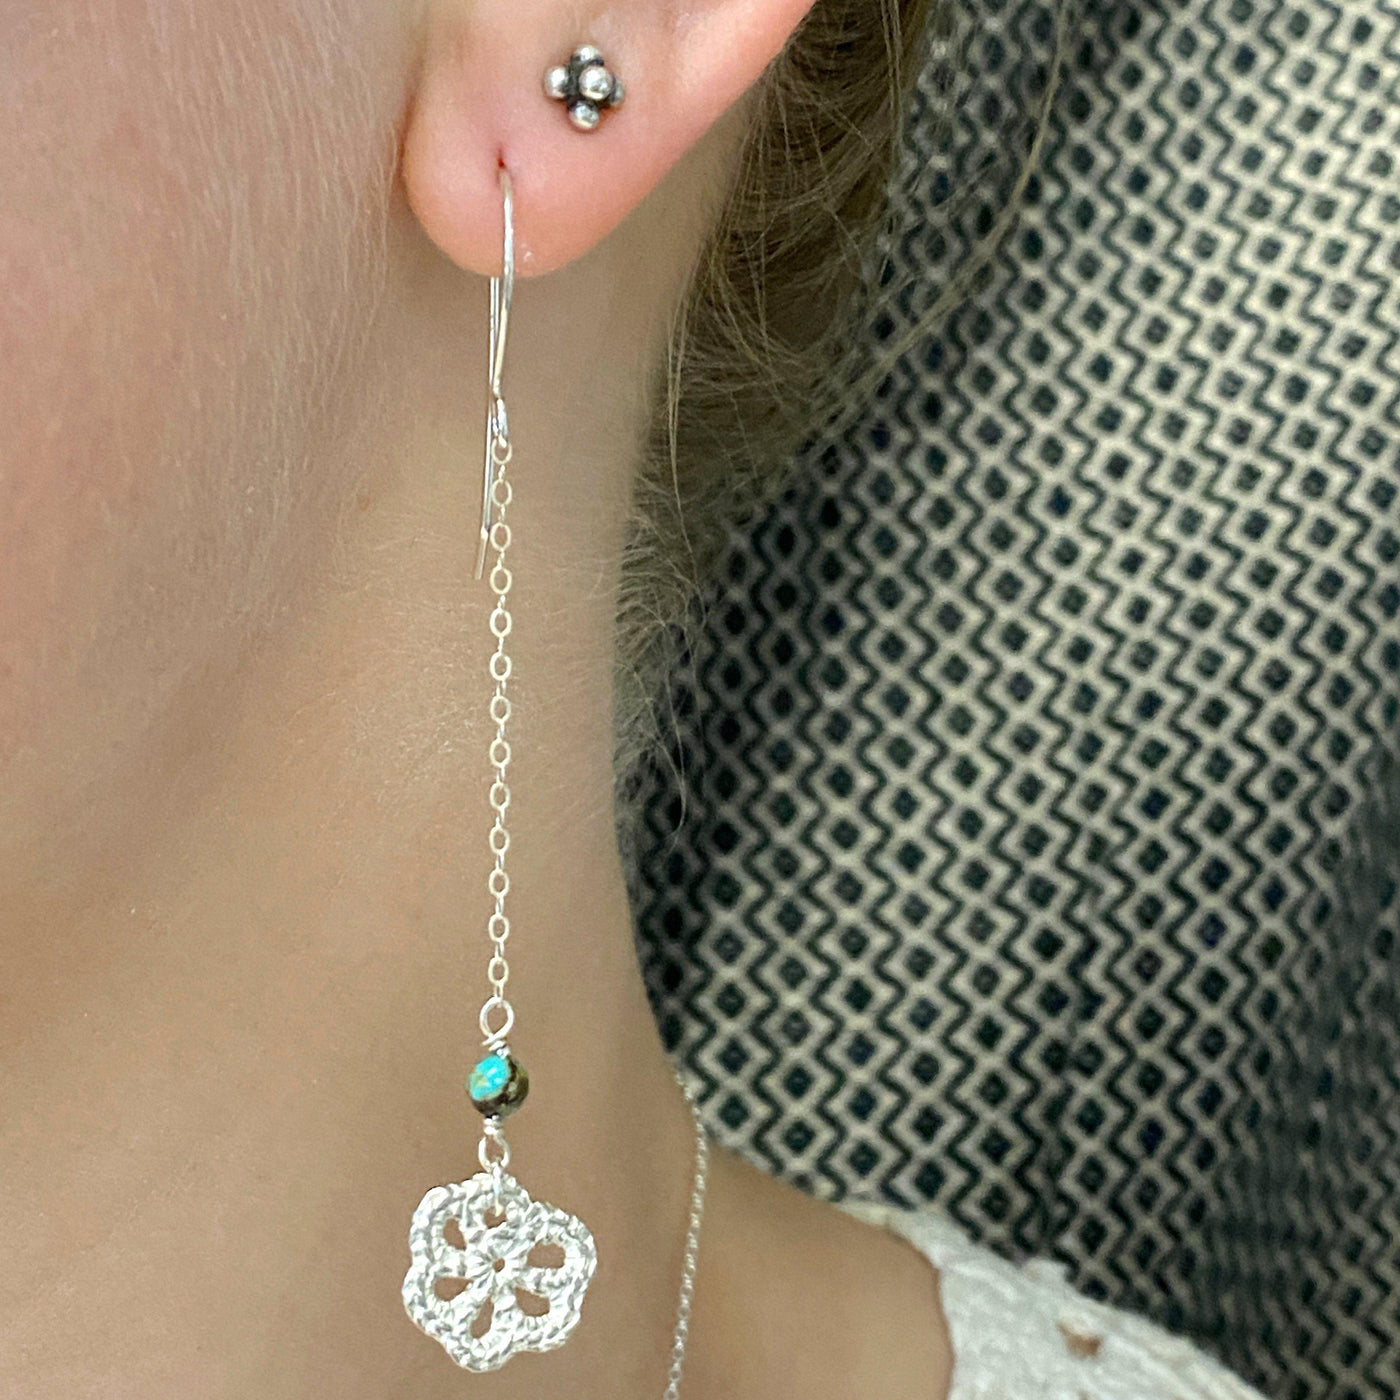 Silver Lace Flower Earrings // Limited Edition-Earrings-Twyla Dill-Simple Flower-Seattle Jewelry-Handmade Jewelry-Seattle Jeweler-Twyla Dill